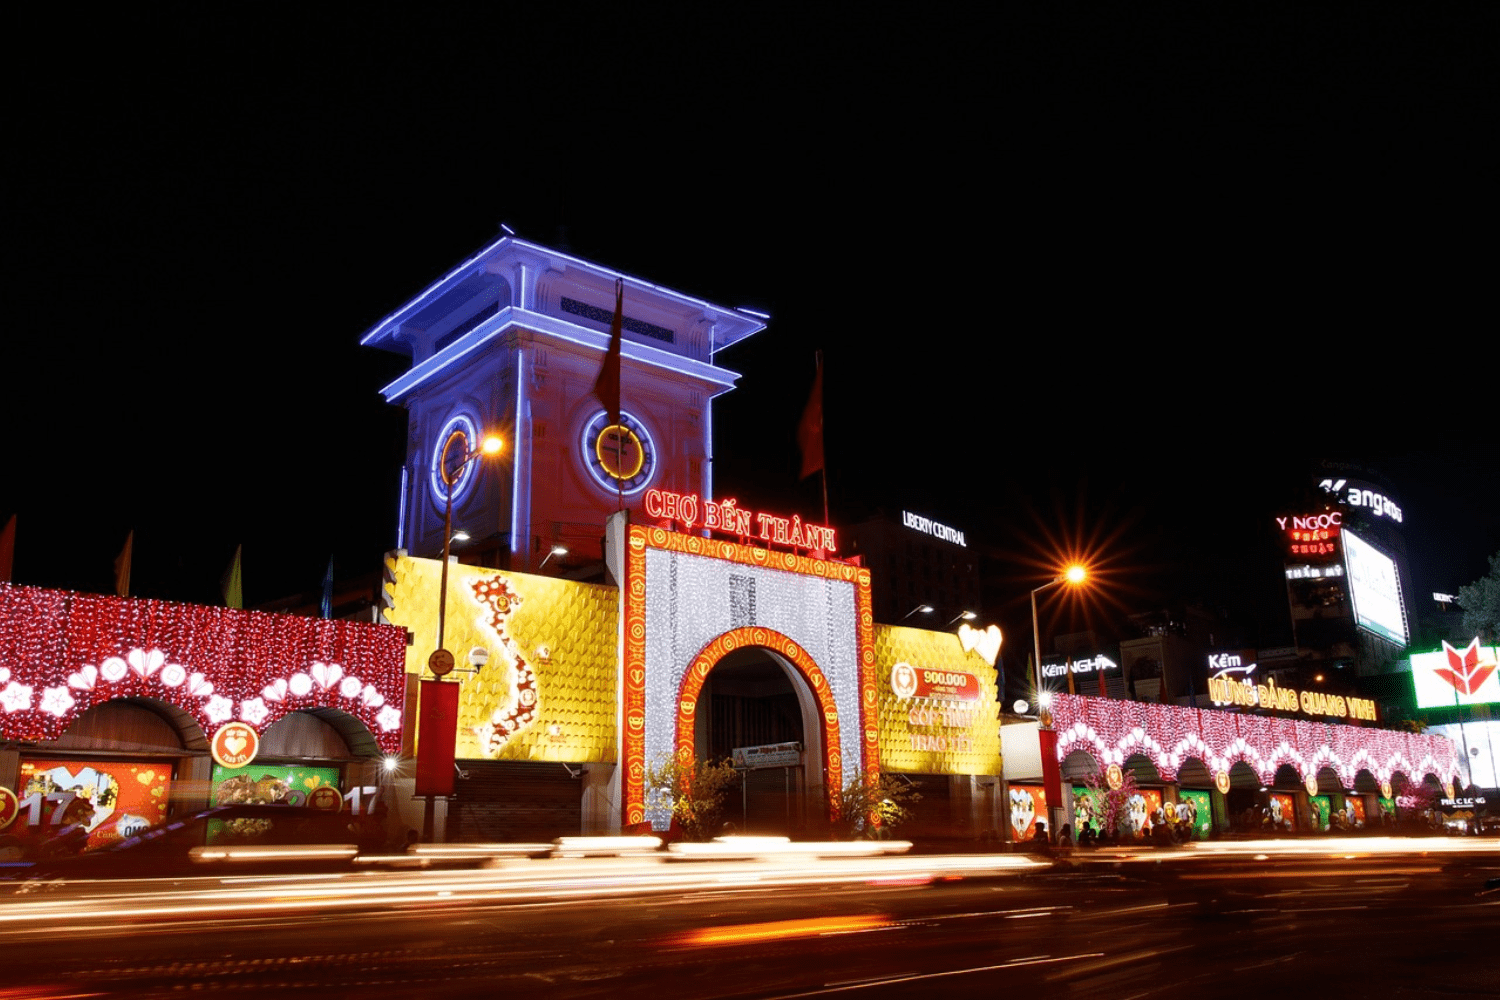 ben-thanh-night-market-in-vietnam